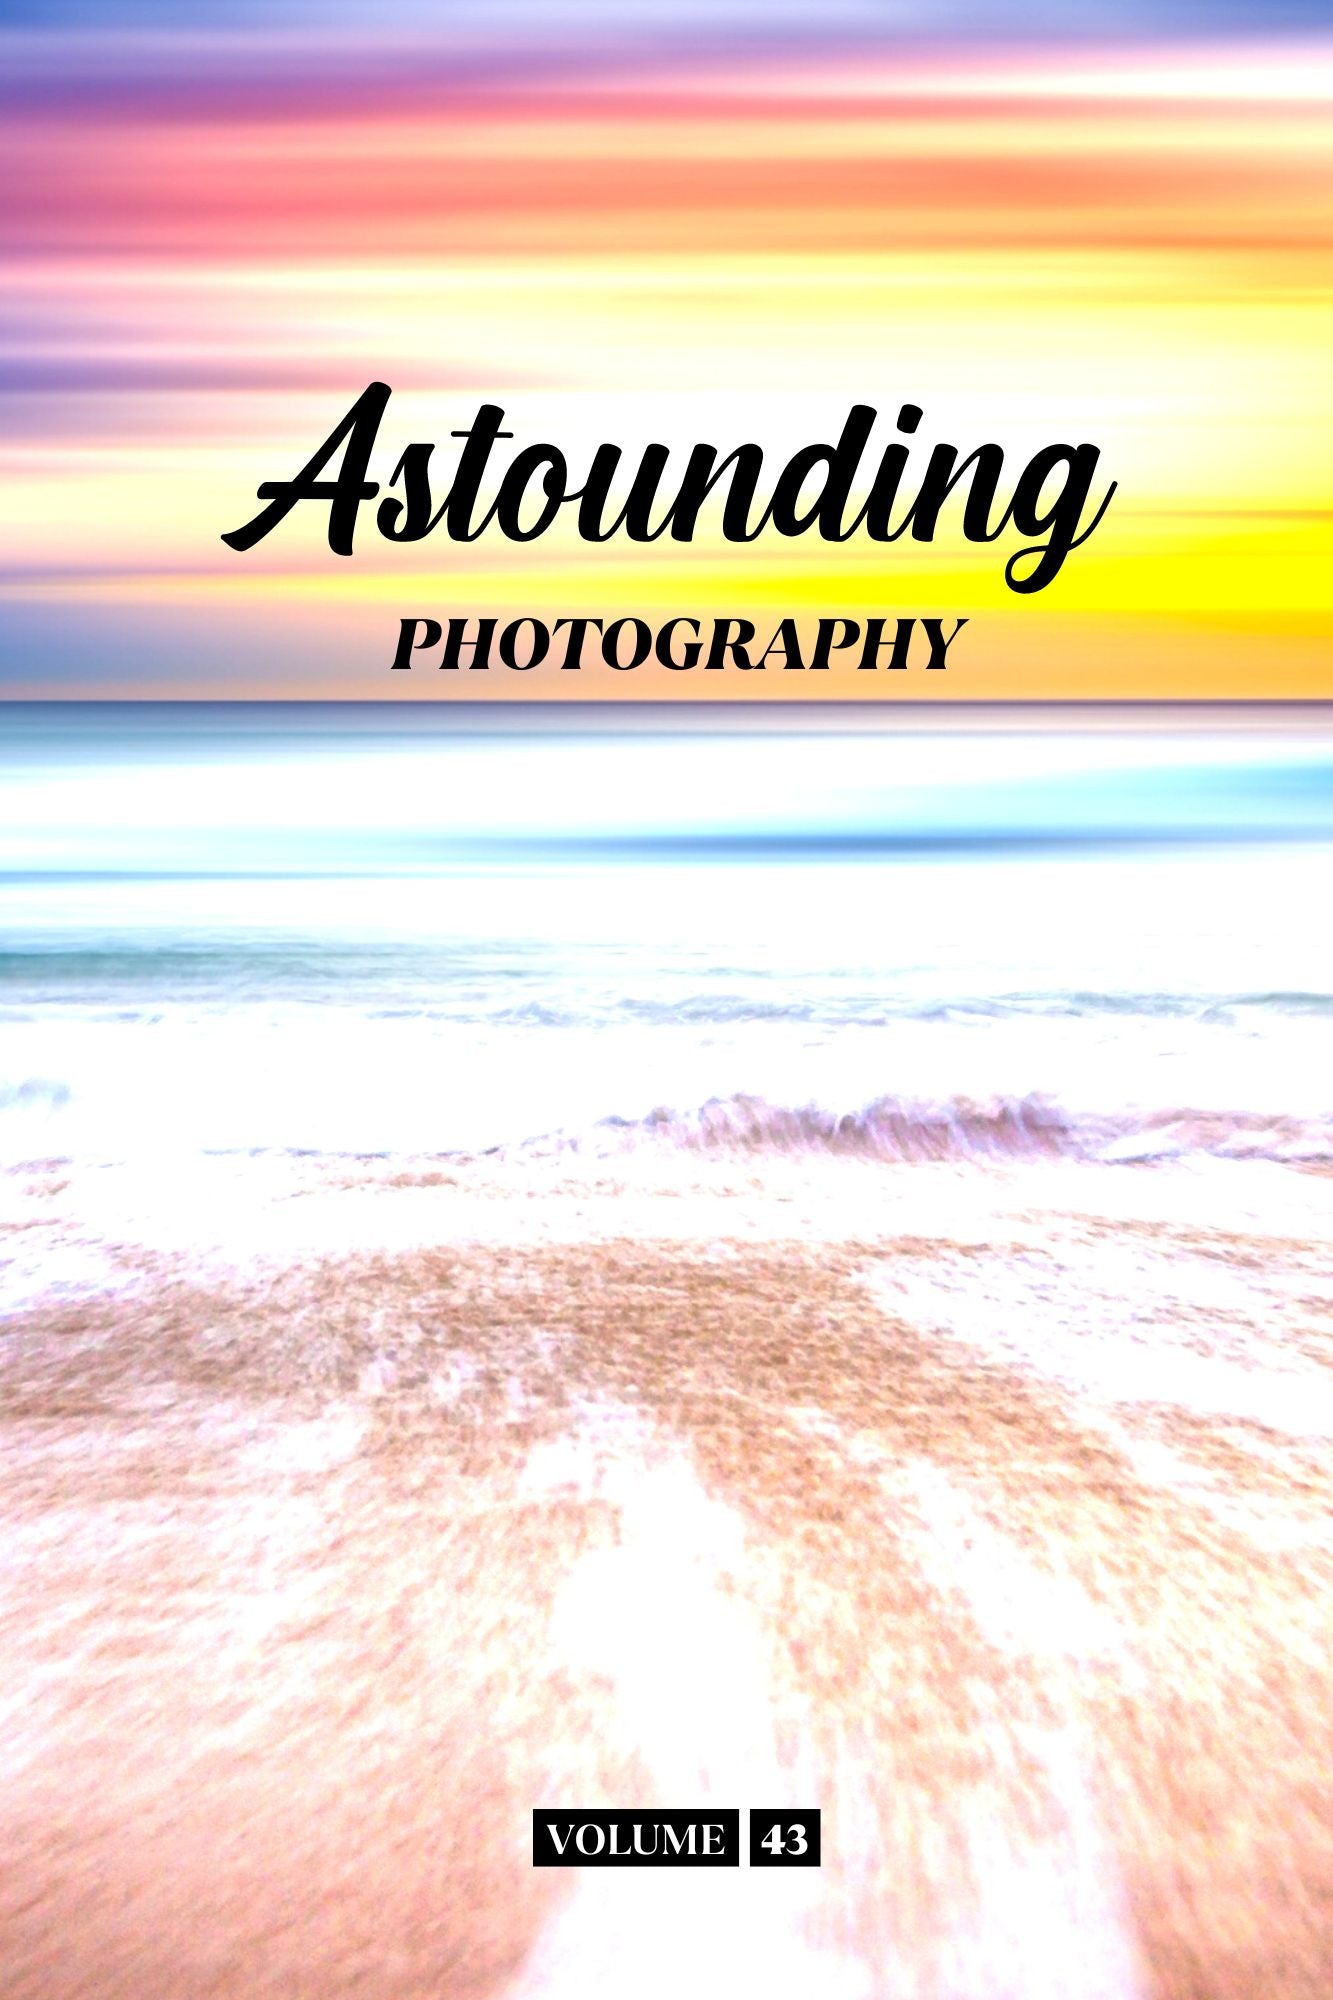 Astounding Photography Volume 43 (Physical Book Pre-Order)